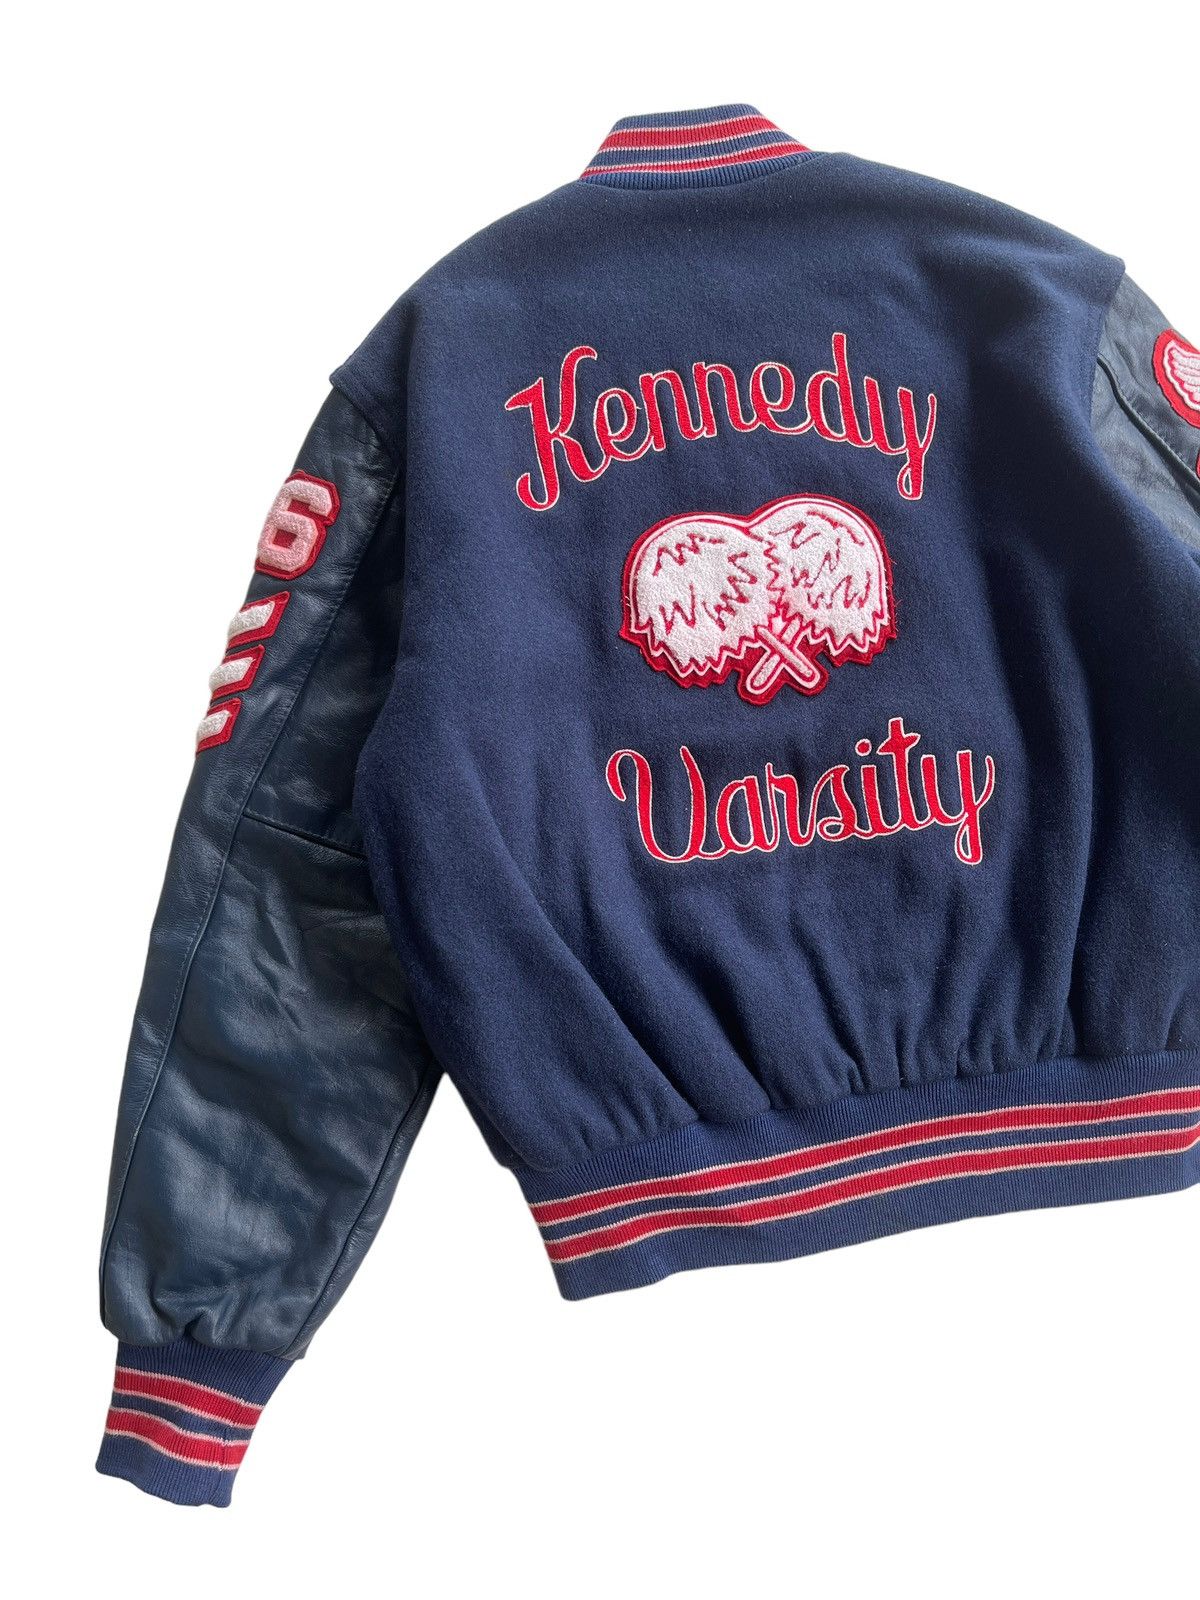 Vintage Vintage 70s Delong Kennedy Varsity Jacket Size US M / EU 48-50 / 2 - 7 Thumbnail